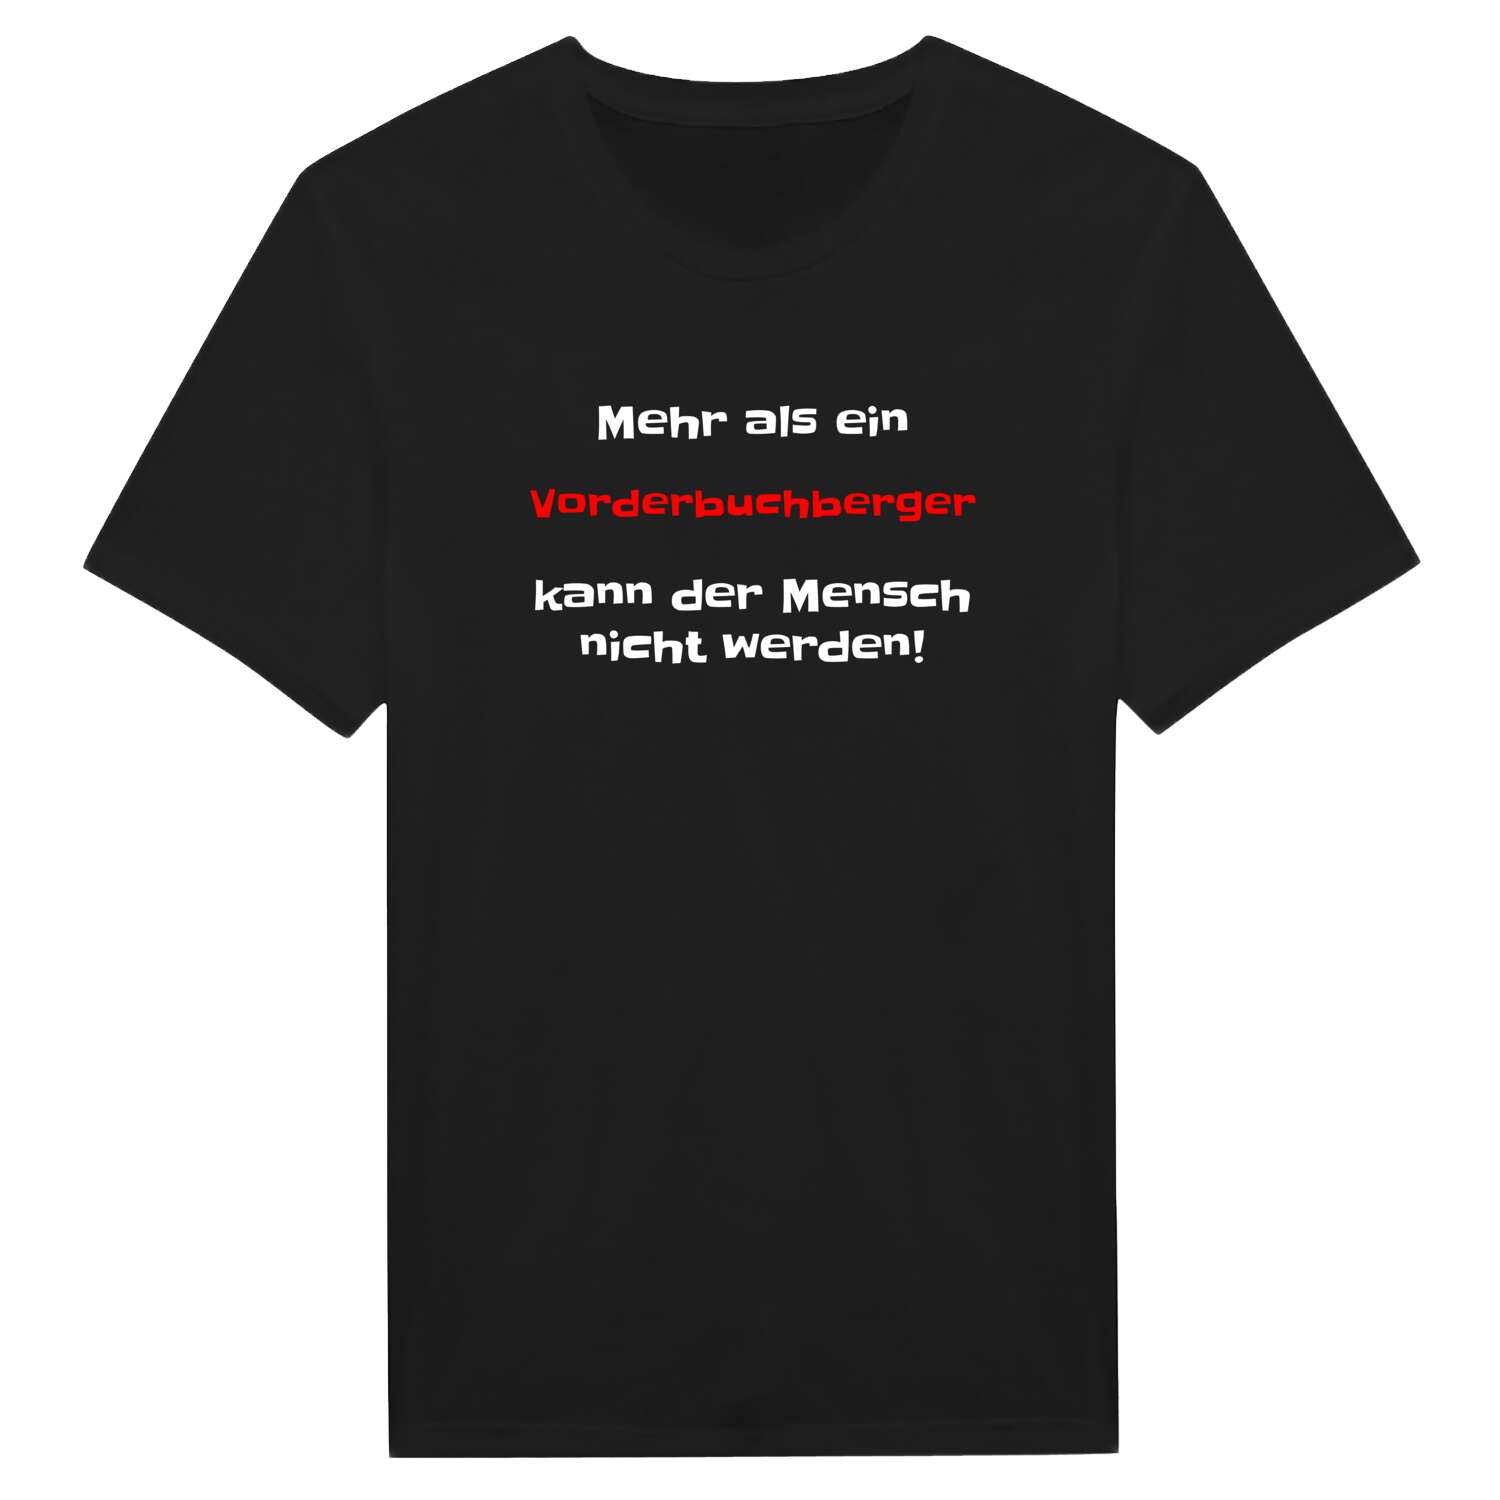 Vorderbuchberg T-Shirt »Mehr als ein«